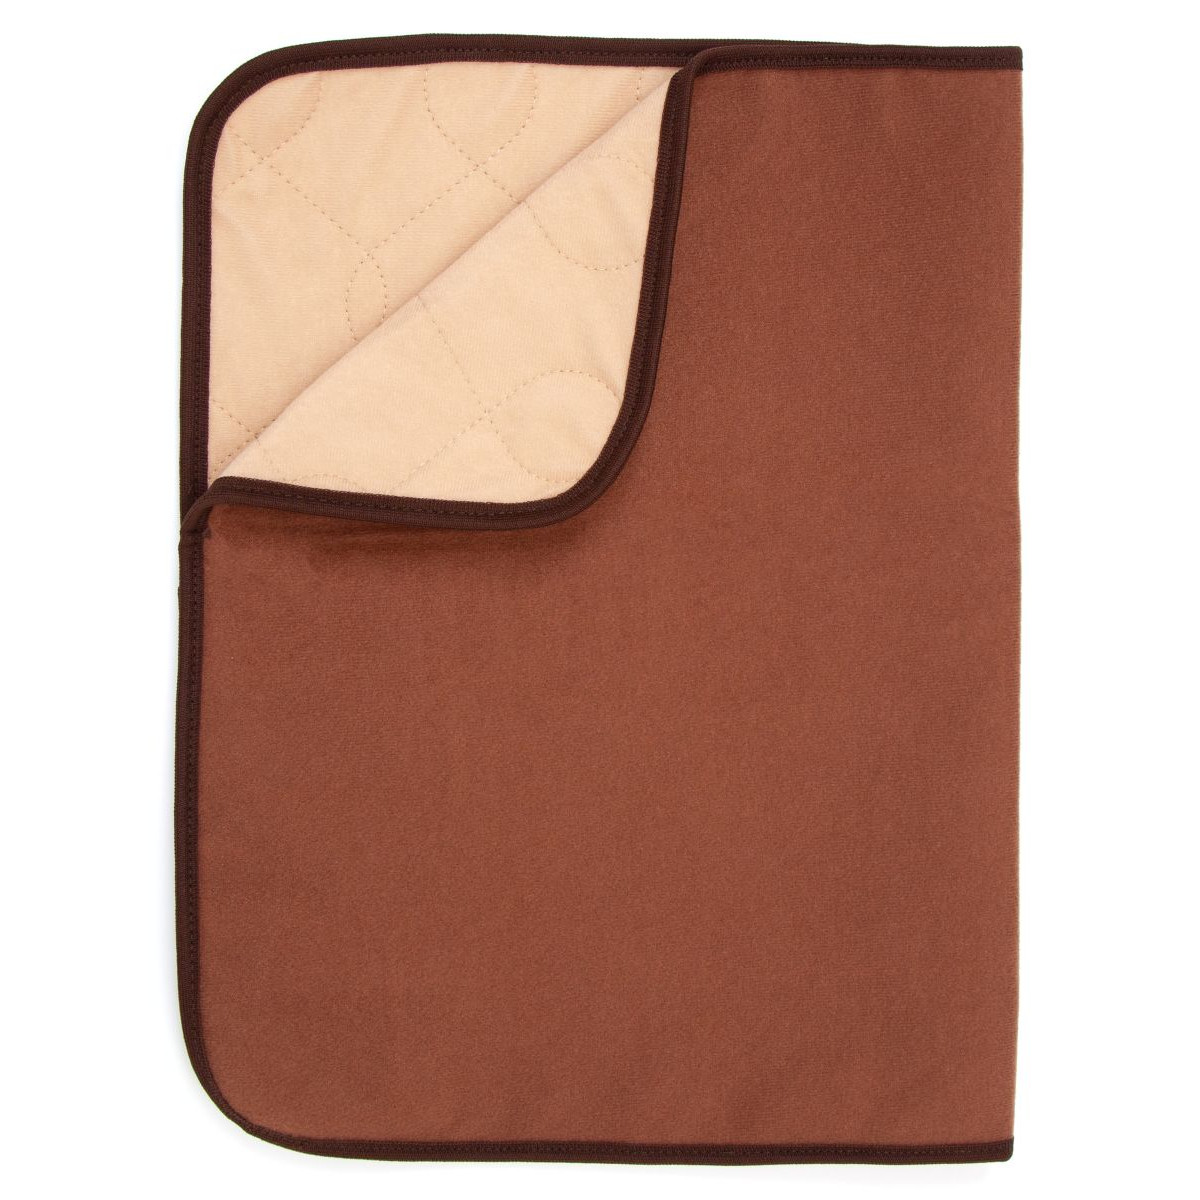 Пеленка для собак многоразовая OSSO Fashion Comfort коричневая, 70 x 60 см